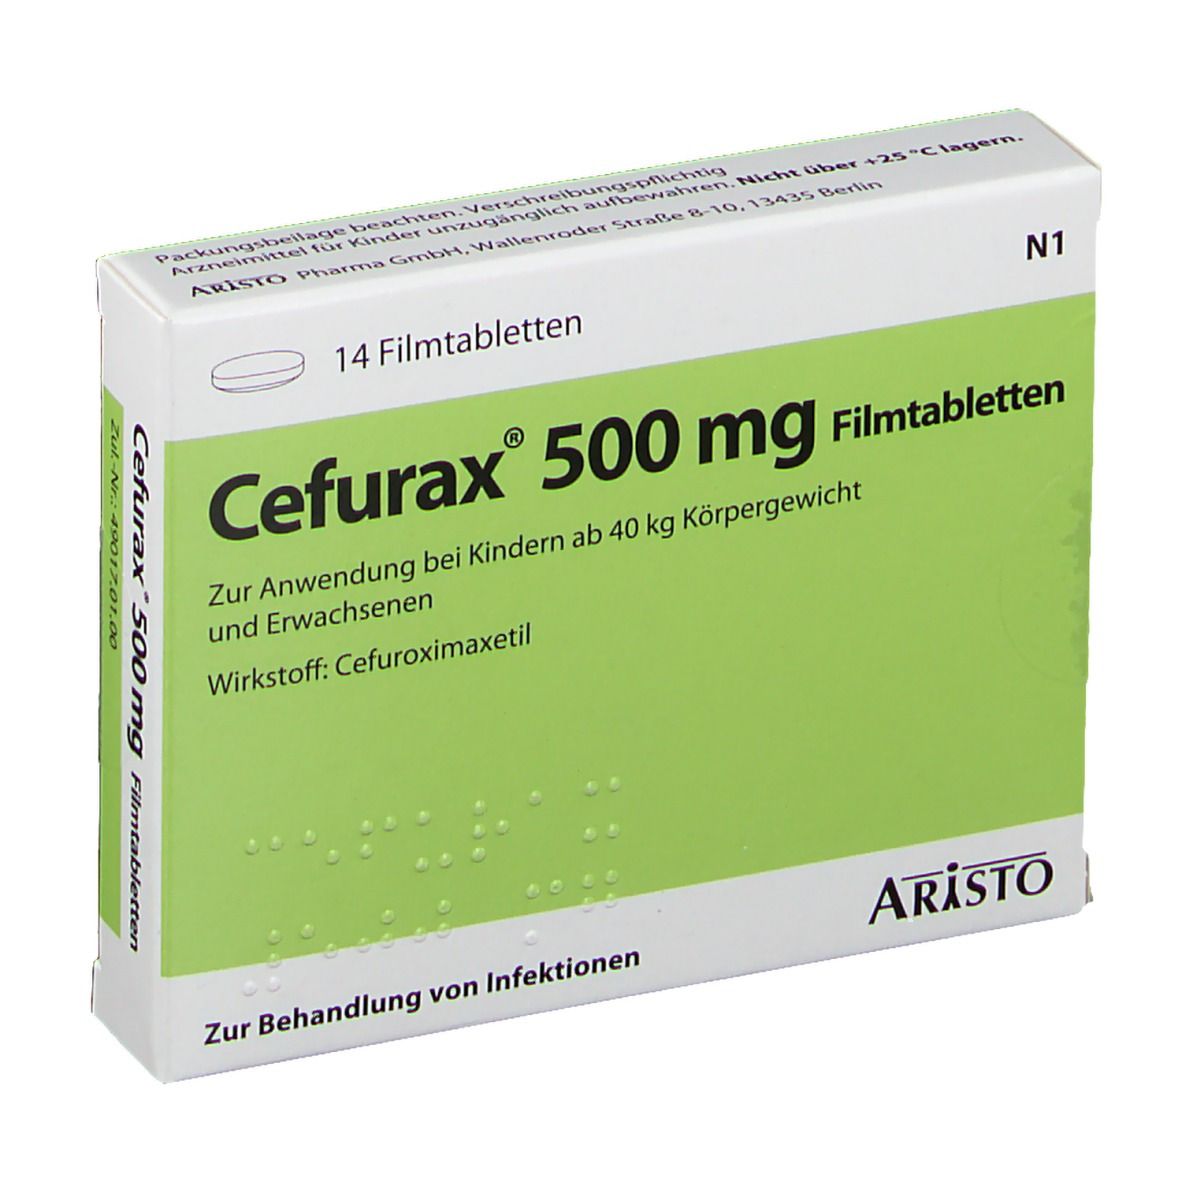 Cefurax ® 500 mg.